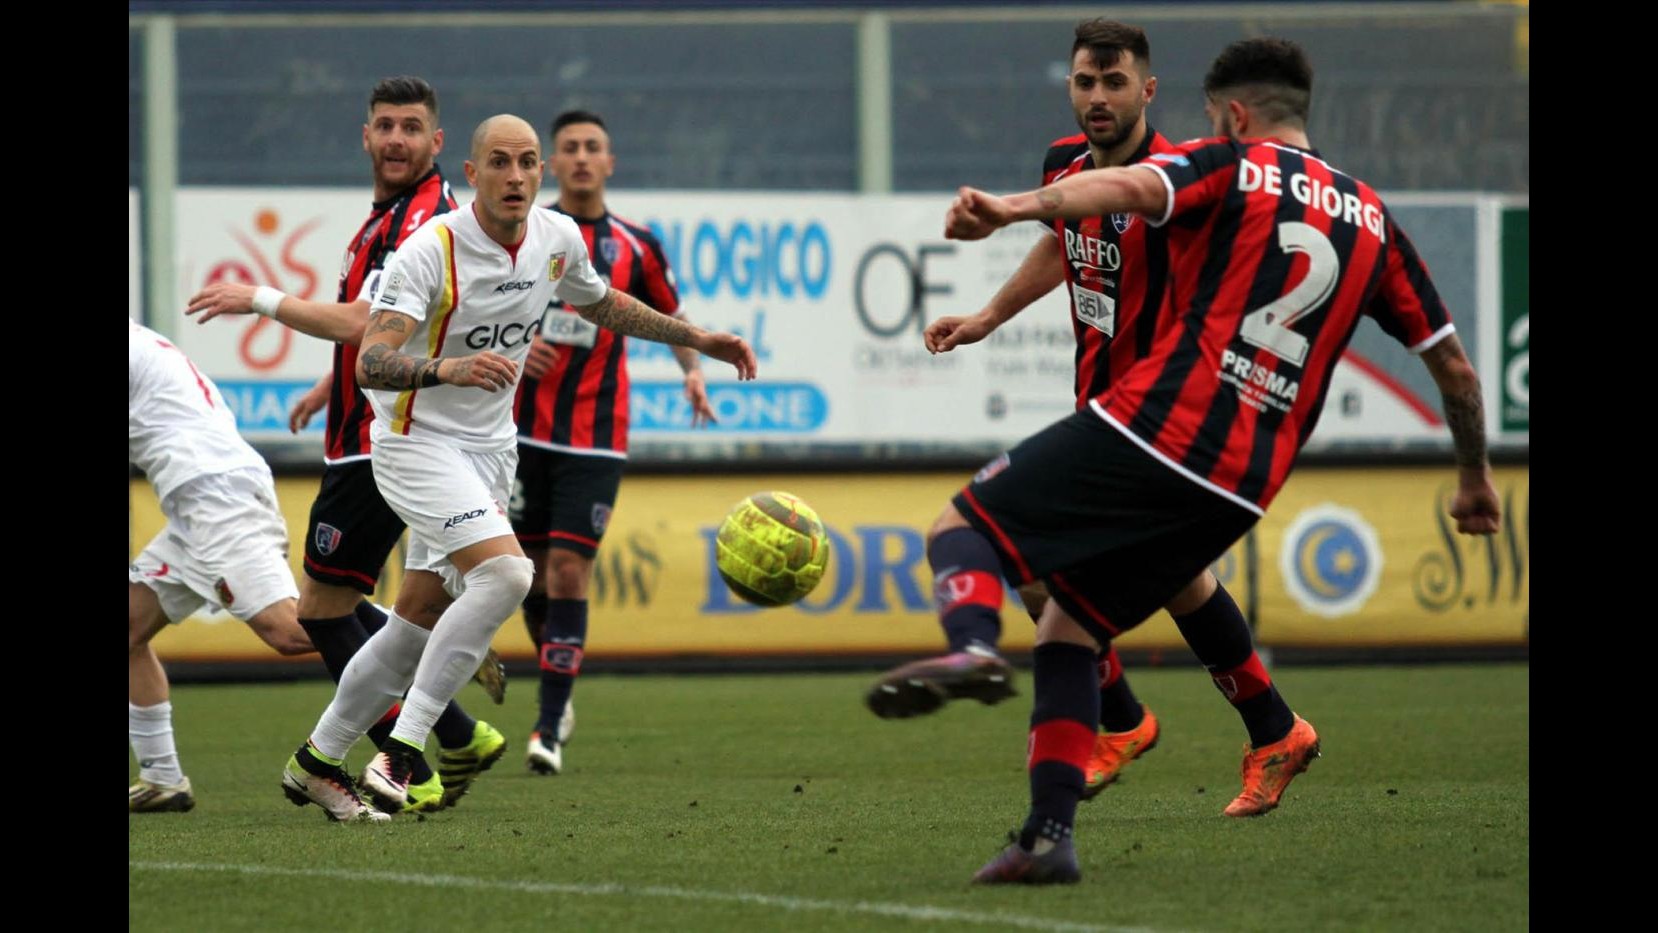 FOTO Lega Pro, Taranto supera di misura Catanzaro 1-0